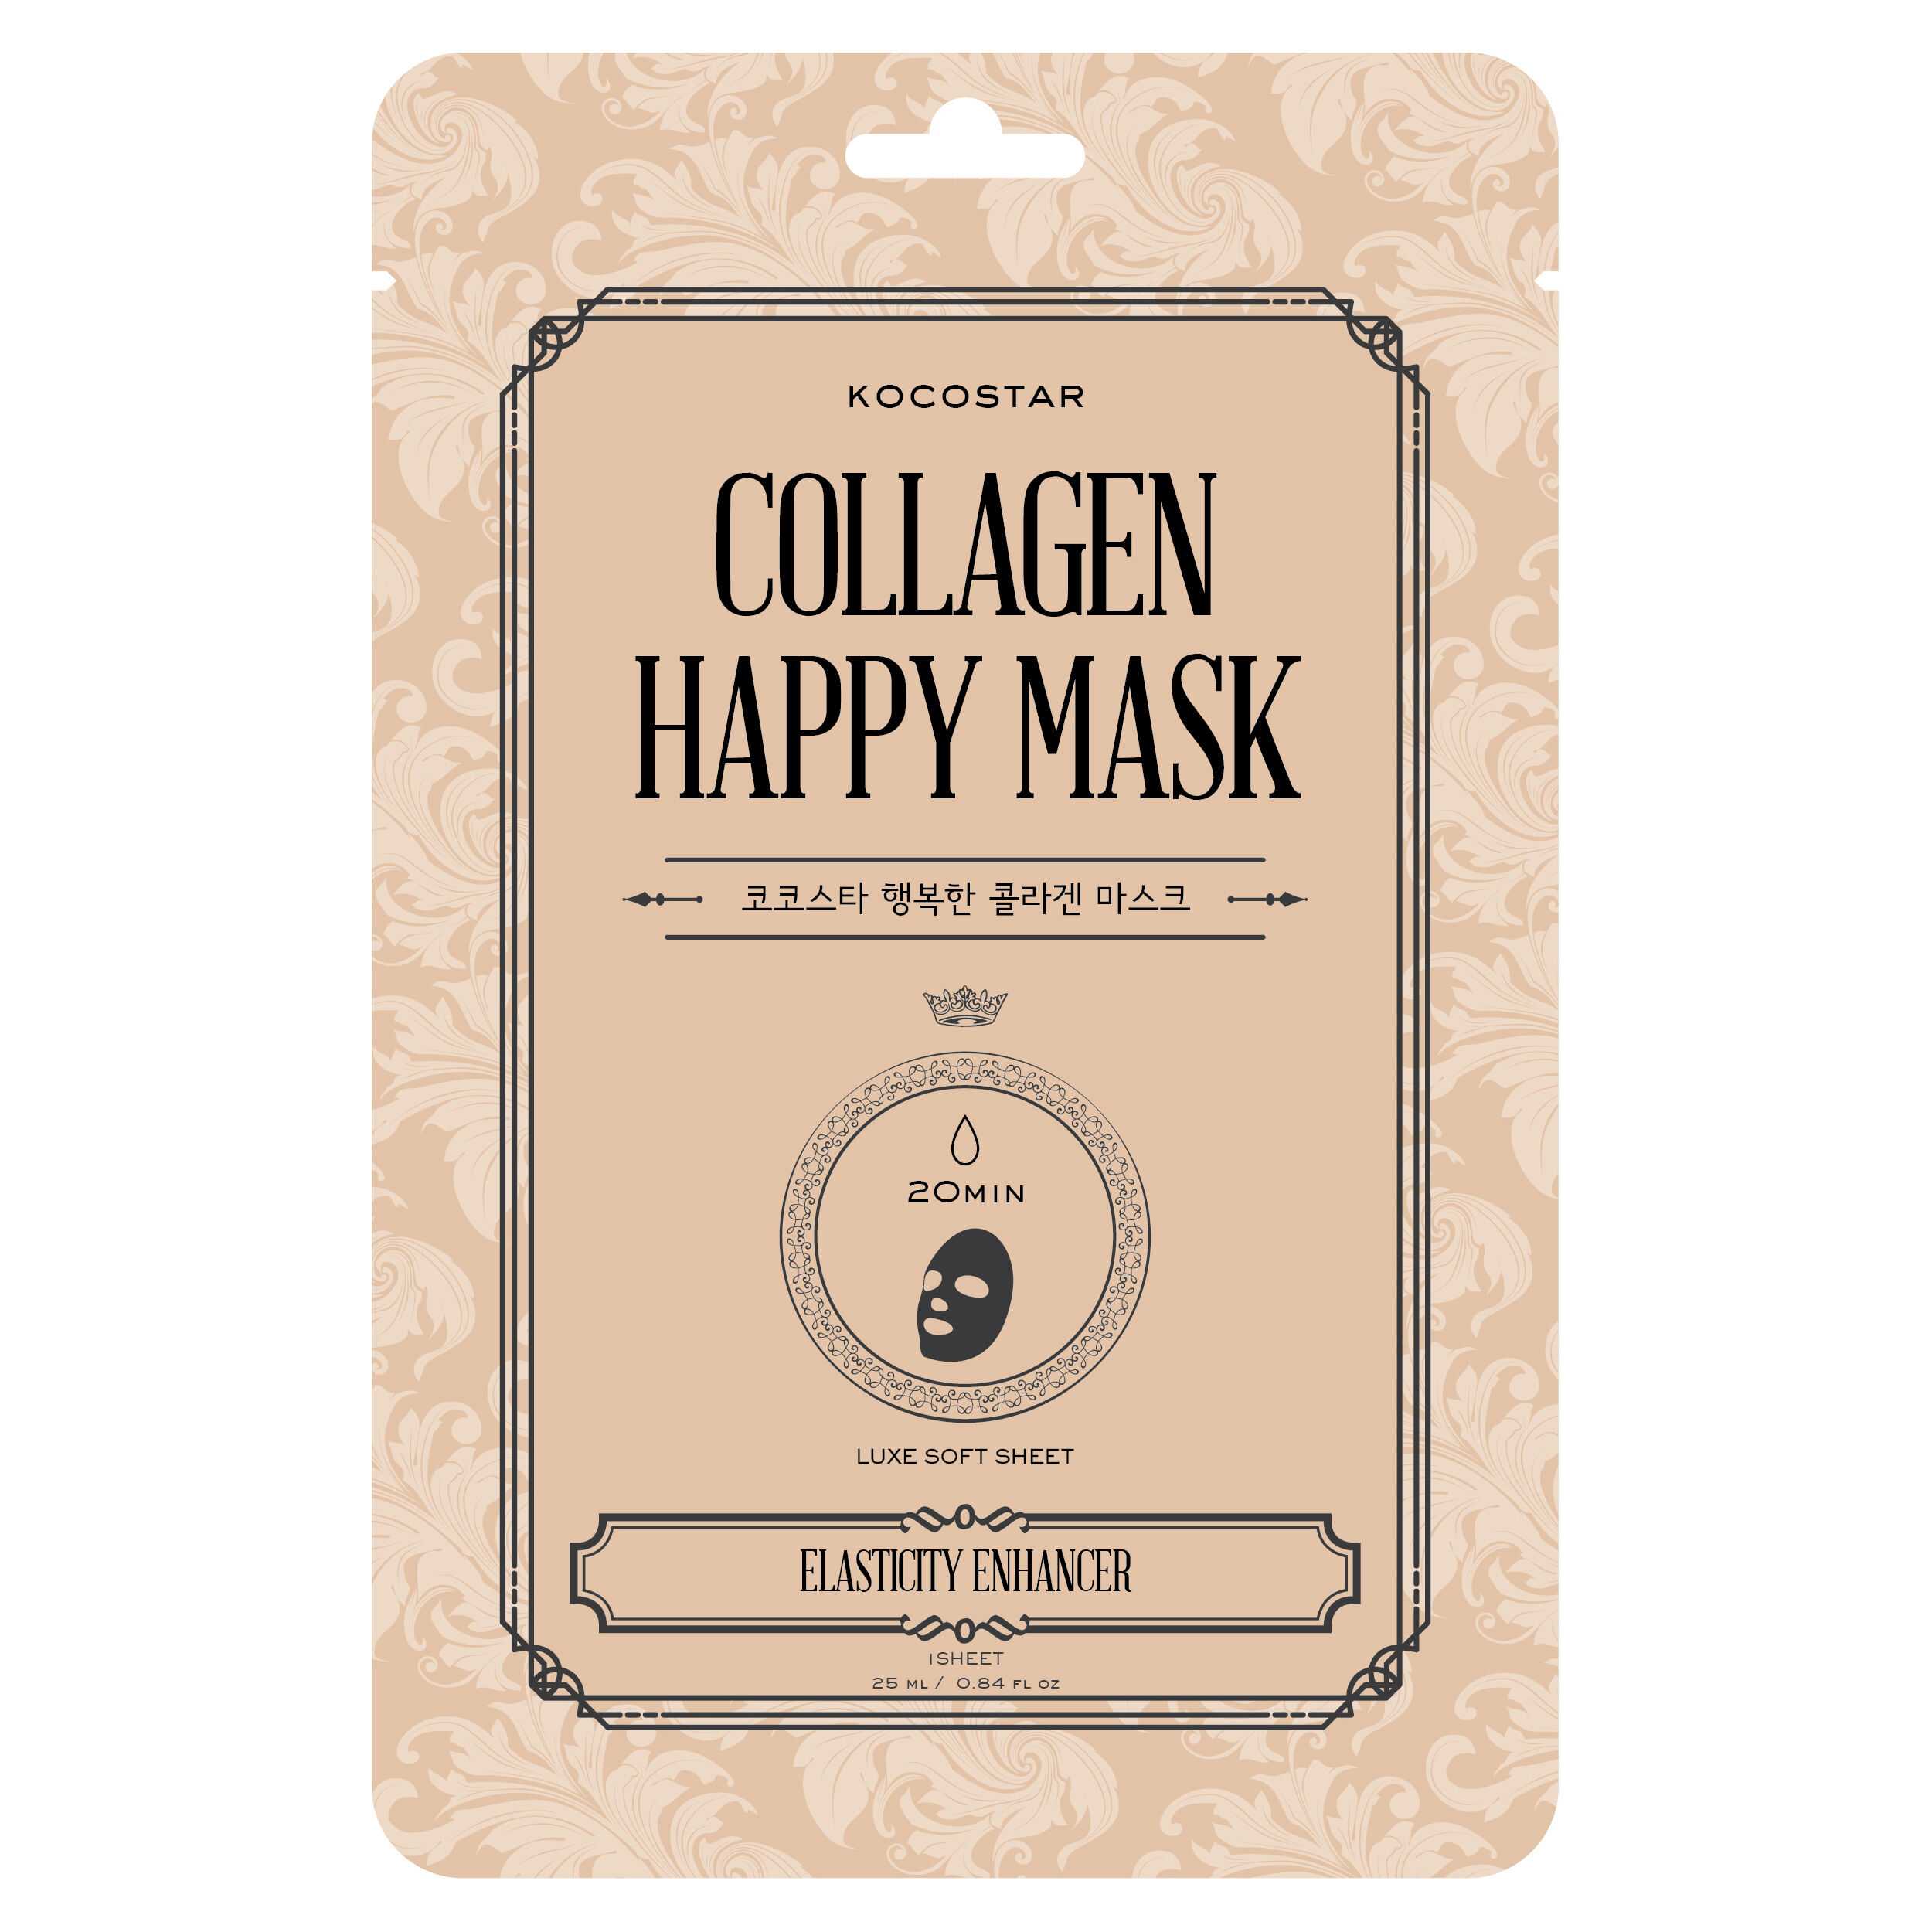 плёночная маска для лица kocostar collagen 50 мл Маска для лица Kocostar Collagen Happy Mask, 25 мл